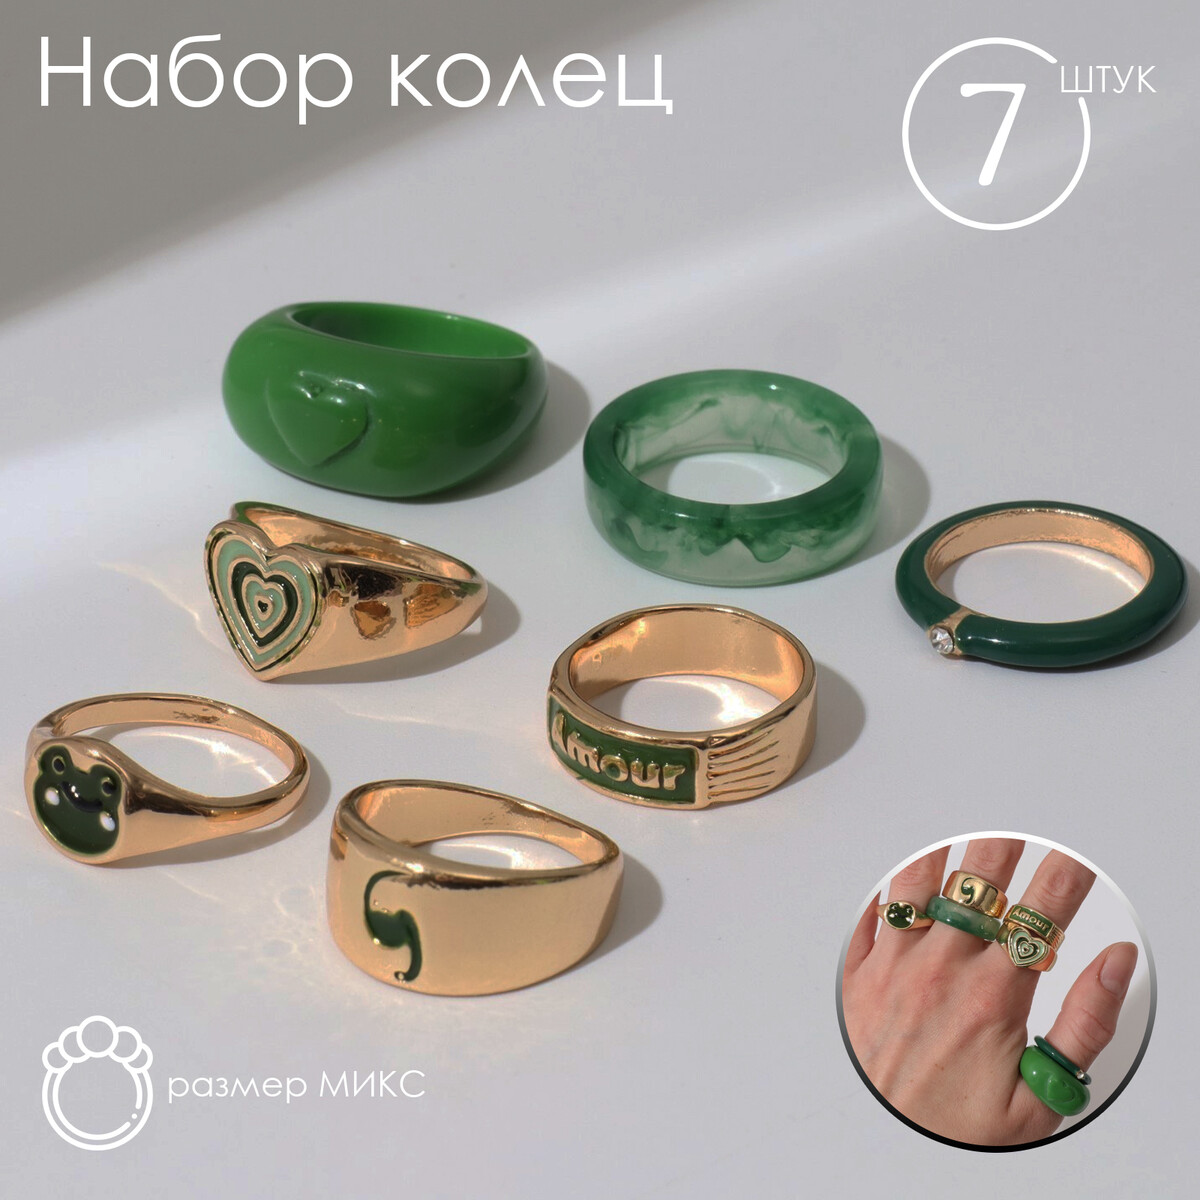 Набор колец 7 штук amour, цвет зеленый в золоте, 16-18 размеры велосипедная сумка vaude karakorum объем 64 л размеры 58х60х32 см 10828